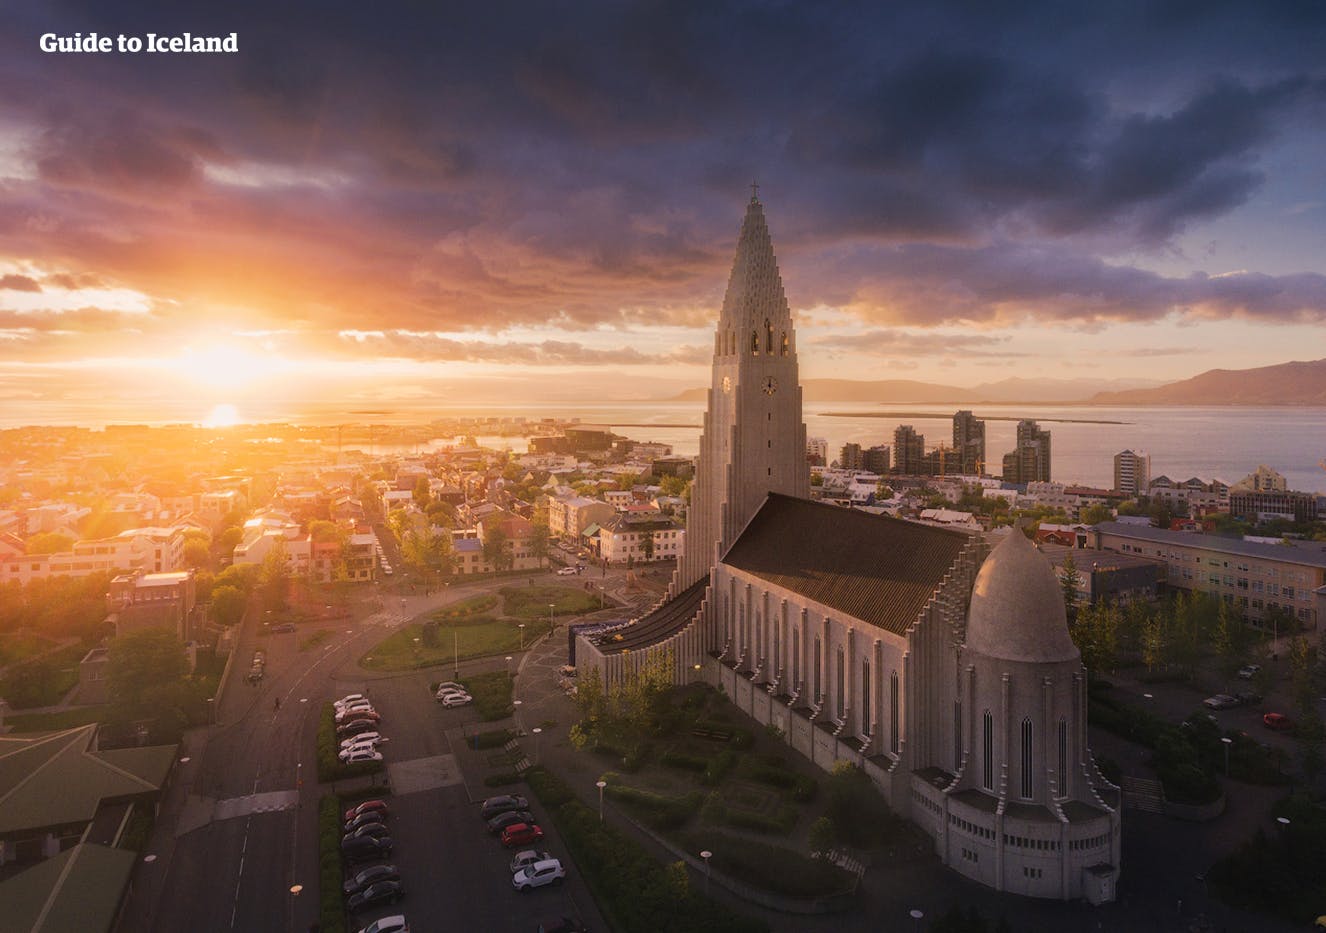 De architectuur van de Hallgrimskirkja is geïnspireerd op IJslands ongelooflijke rotsformaties.